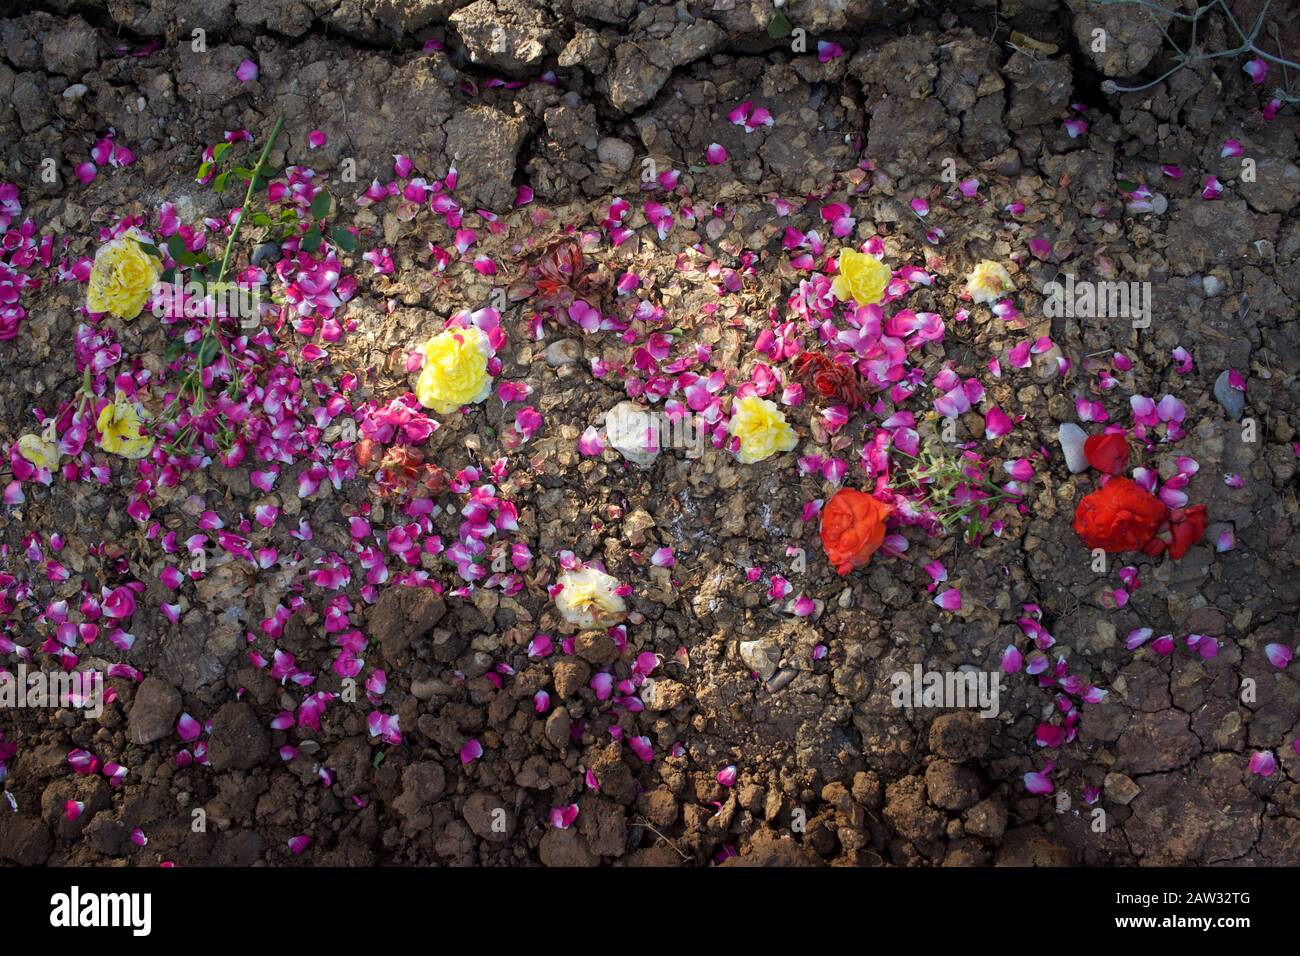 Flores y pétalos de flores esparcidos sobre tierra seca y agrietada Foto de stock